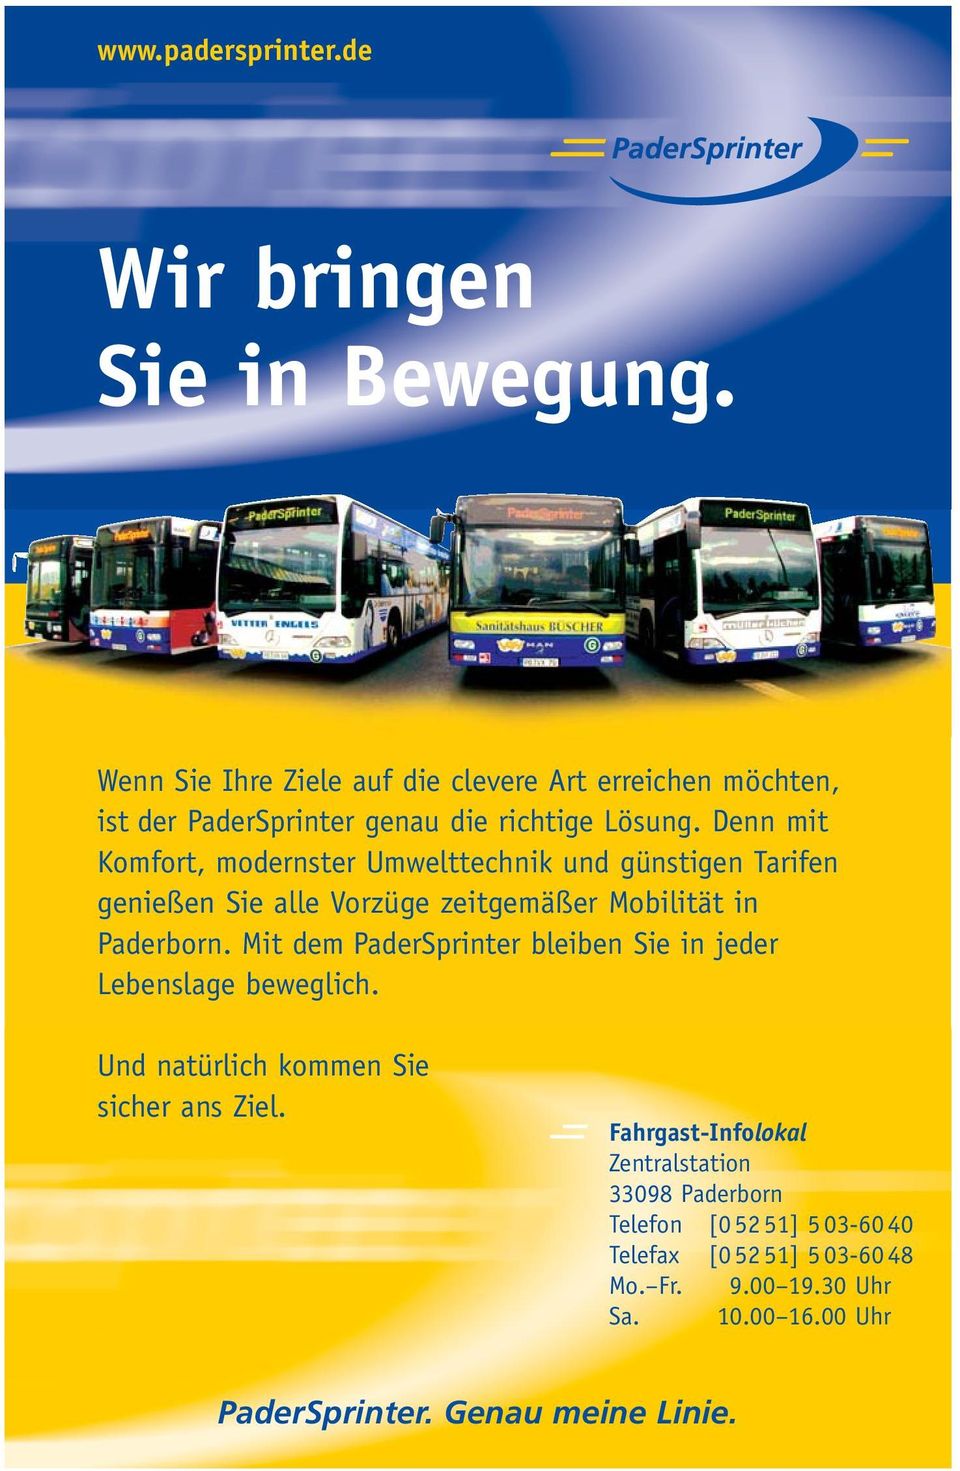 Denn mit Komfort, modernster Umwelttechnik und günstigen Tarifen genießen Sie alle Vor züge zeitgemäßer Mobilität in Paderborn.